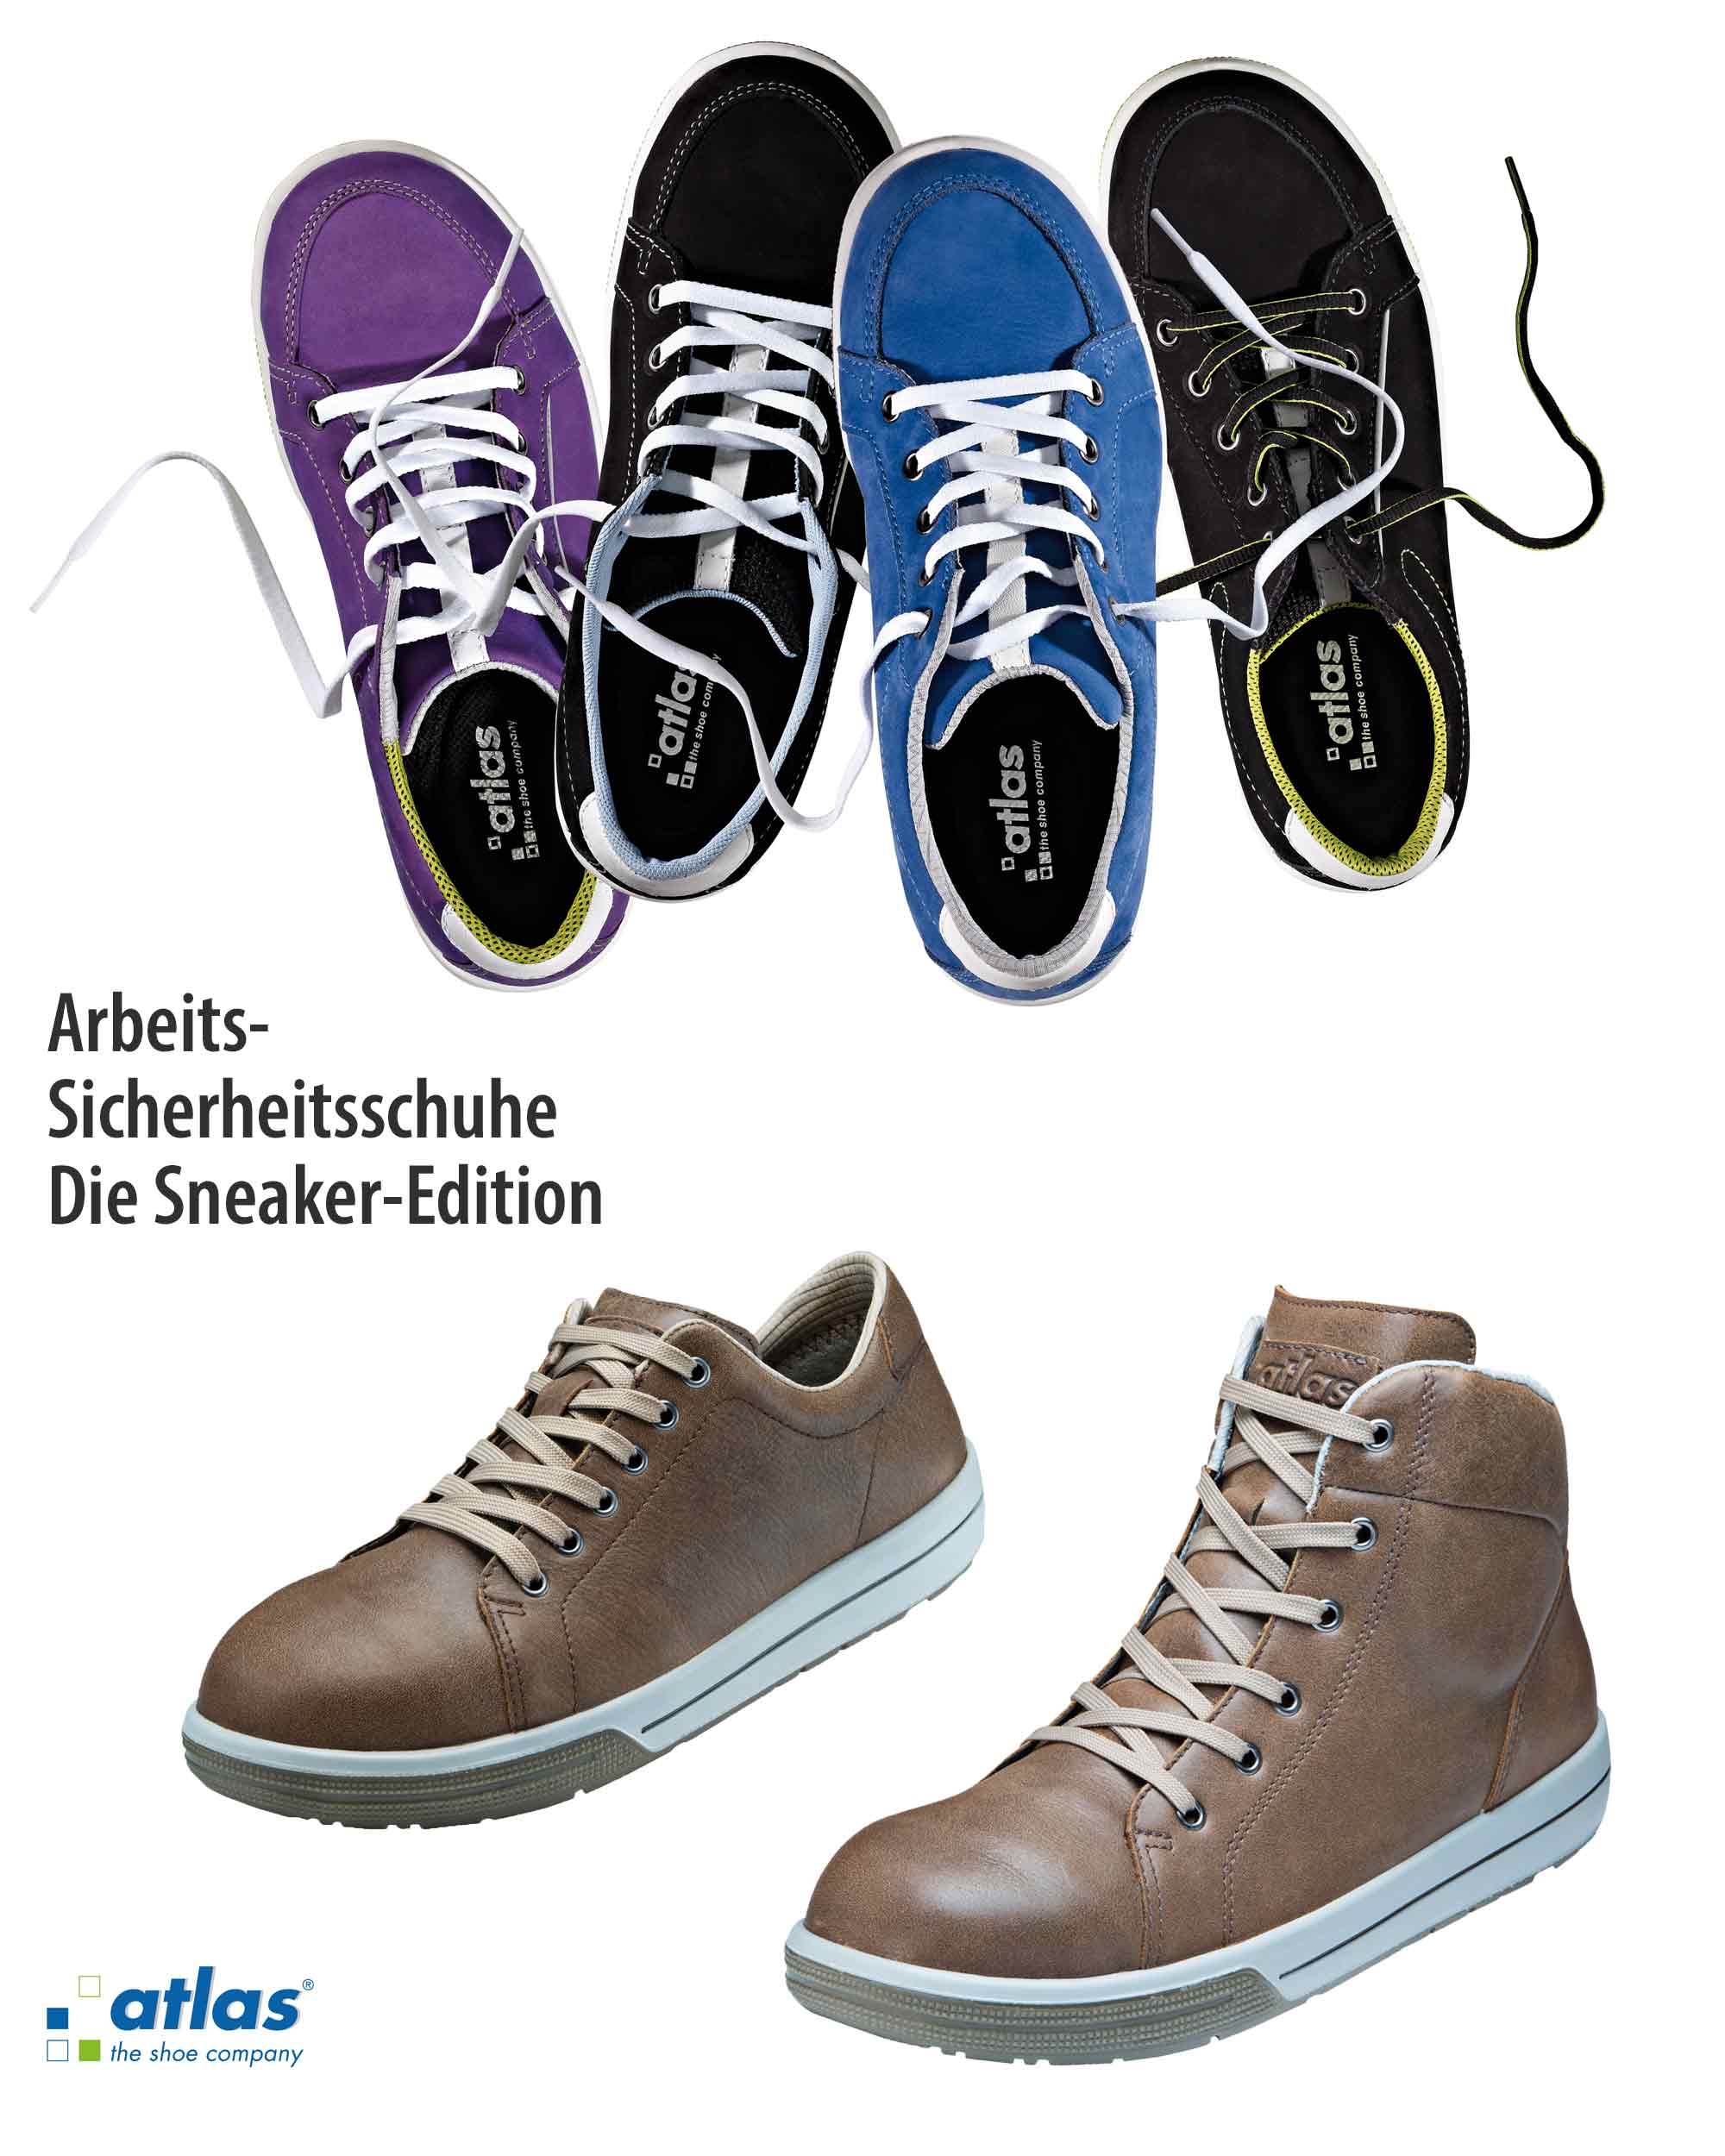 Arbeitssicherheitsschuhe von Atlas im modernen Sneakerdesign! Sicherheitsschuhe mit Style und Schuheinlageneignung